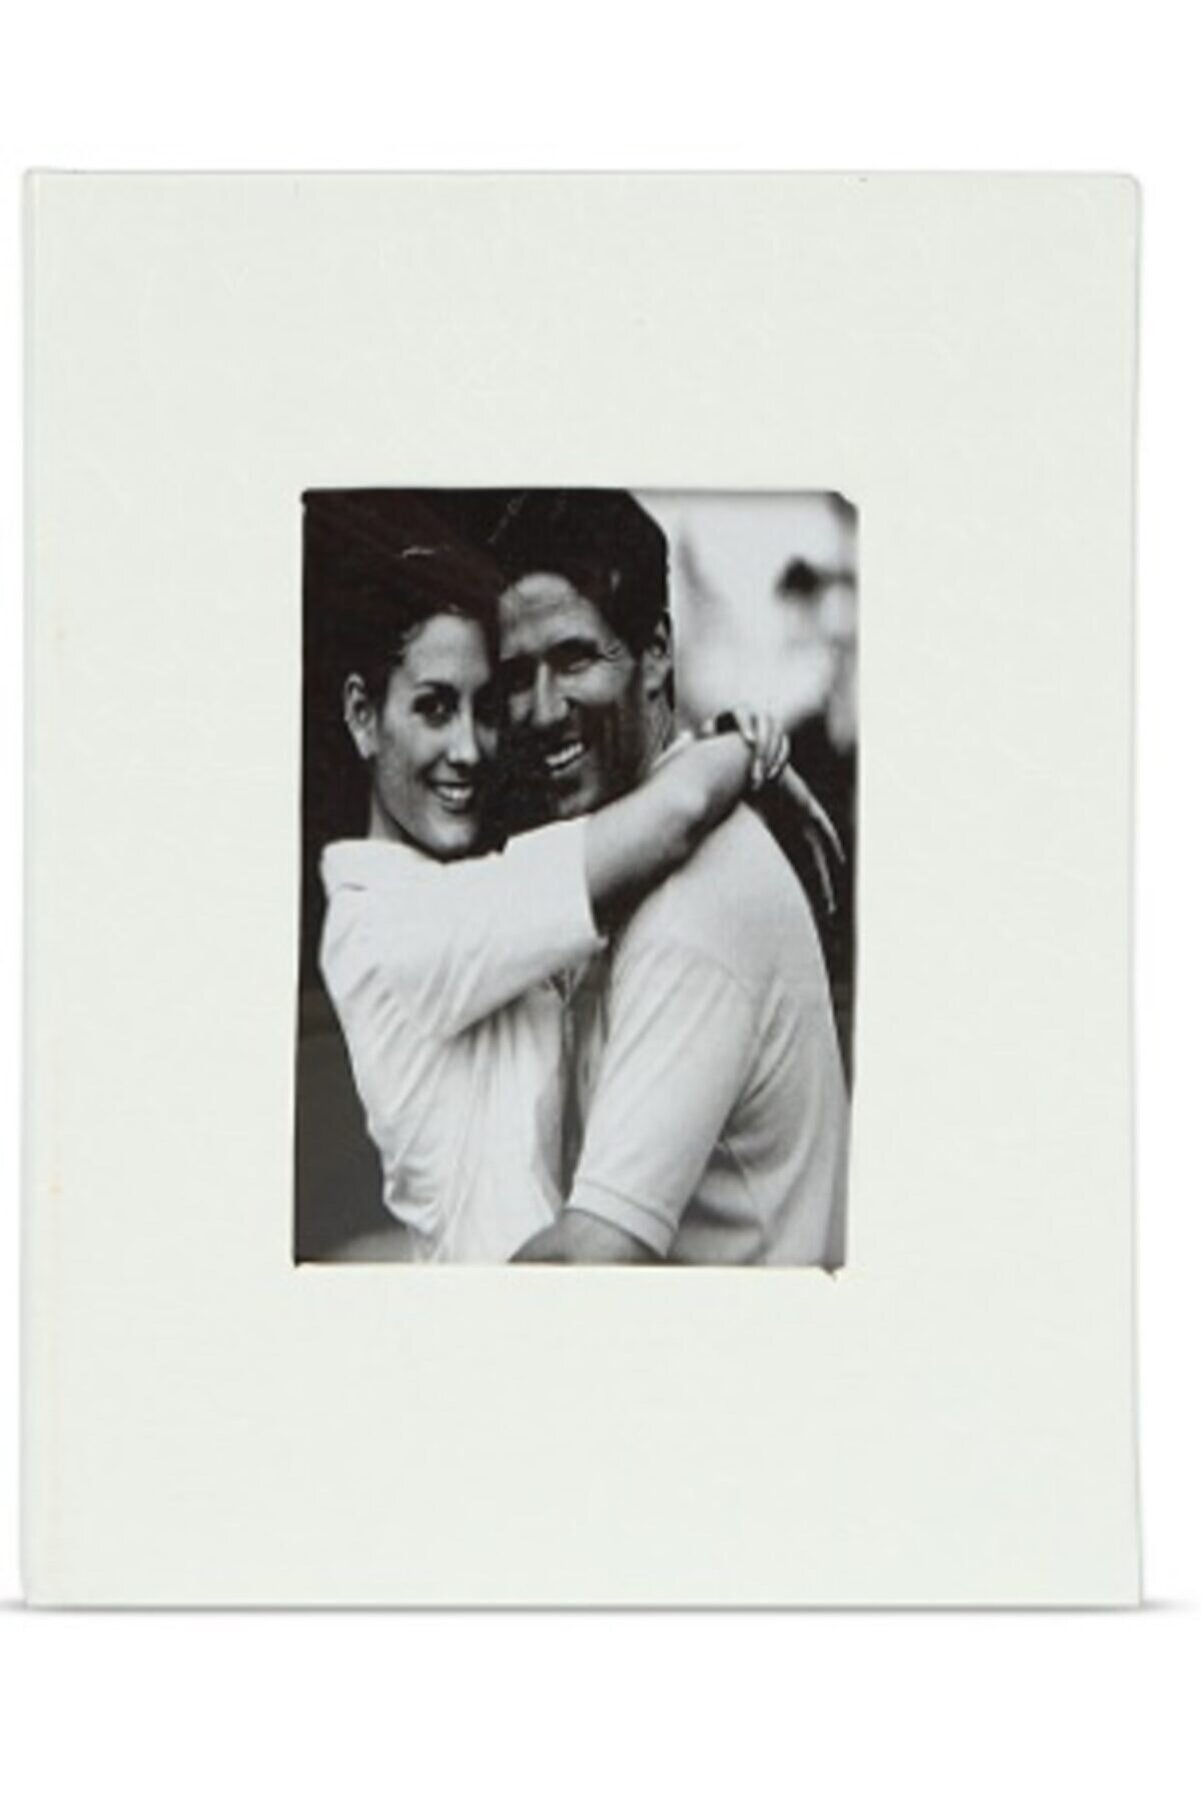 Vural Foto Baskı 100lü 15x20cm Fotoğraf Albümü Beyaz - Deri Kaplı Foto Pencereli - Aile Resimleri Için Album